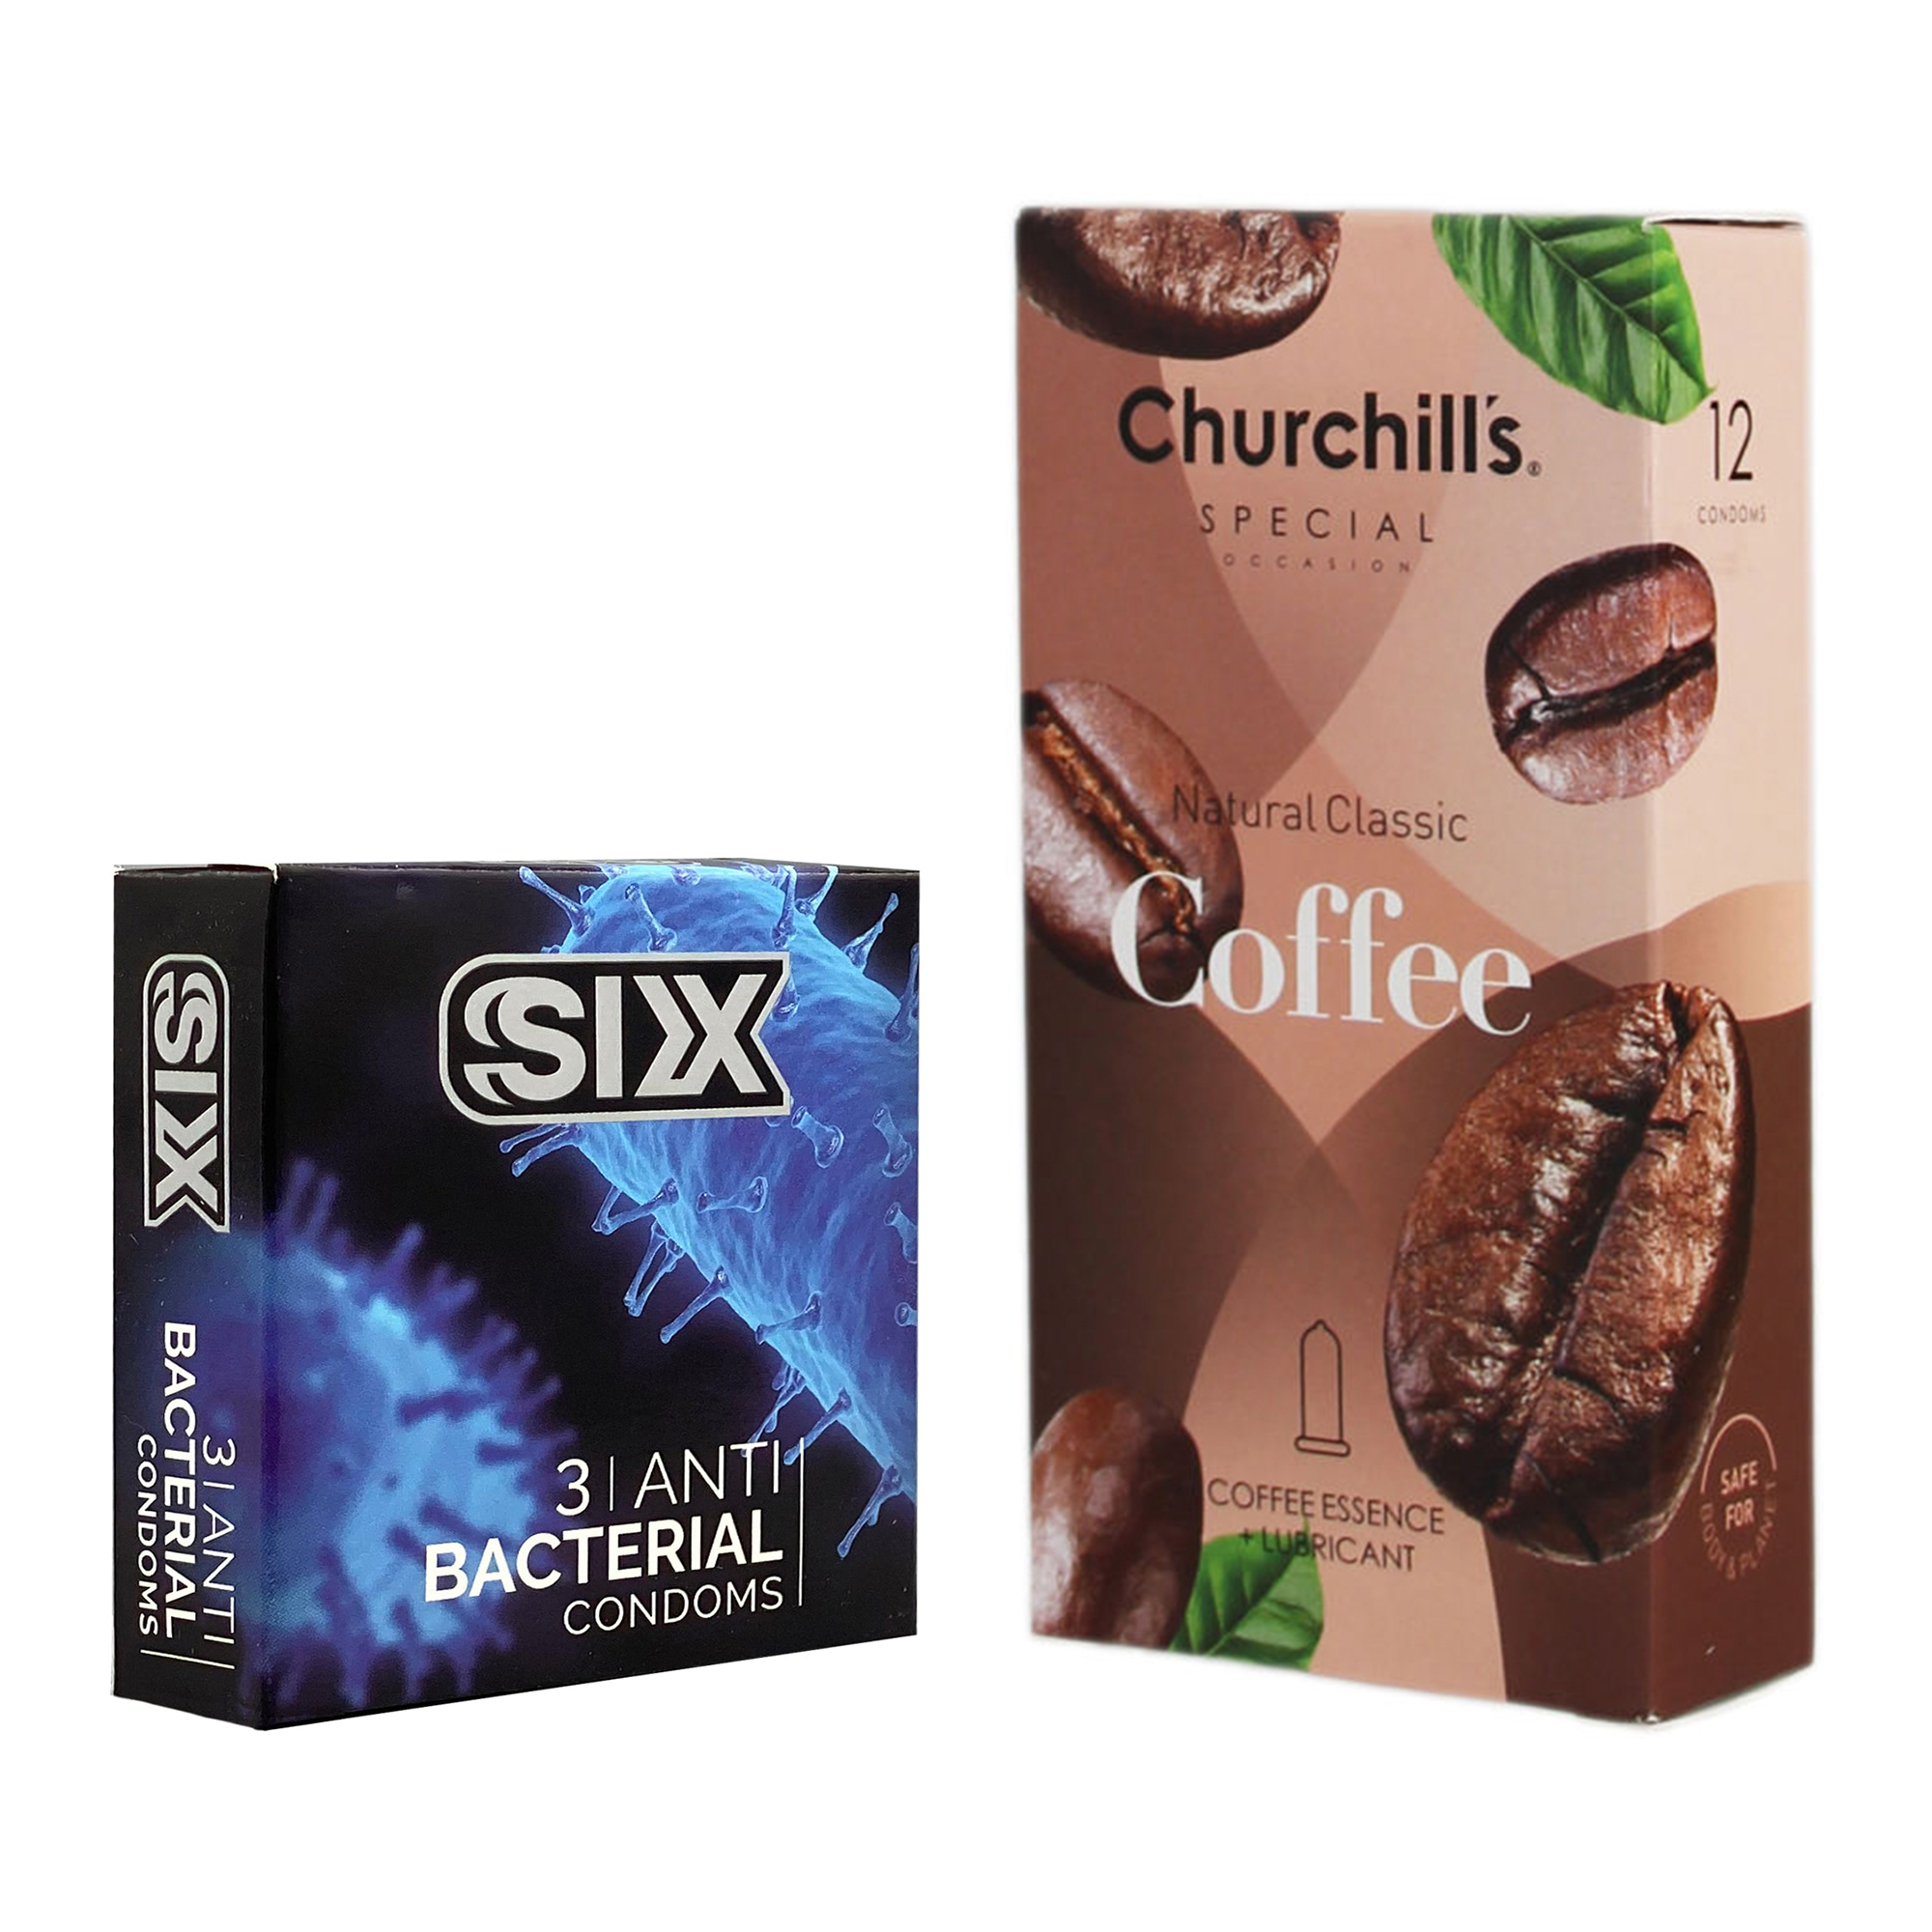 کاندوم چرچیلز مدل Coffee بسته 12 عددی به همراه کاندوم سیکس مدل آنتی باکتریال بسته 3 عددی 